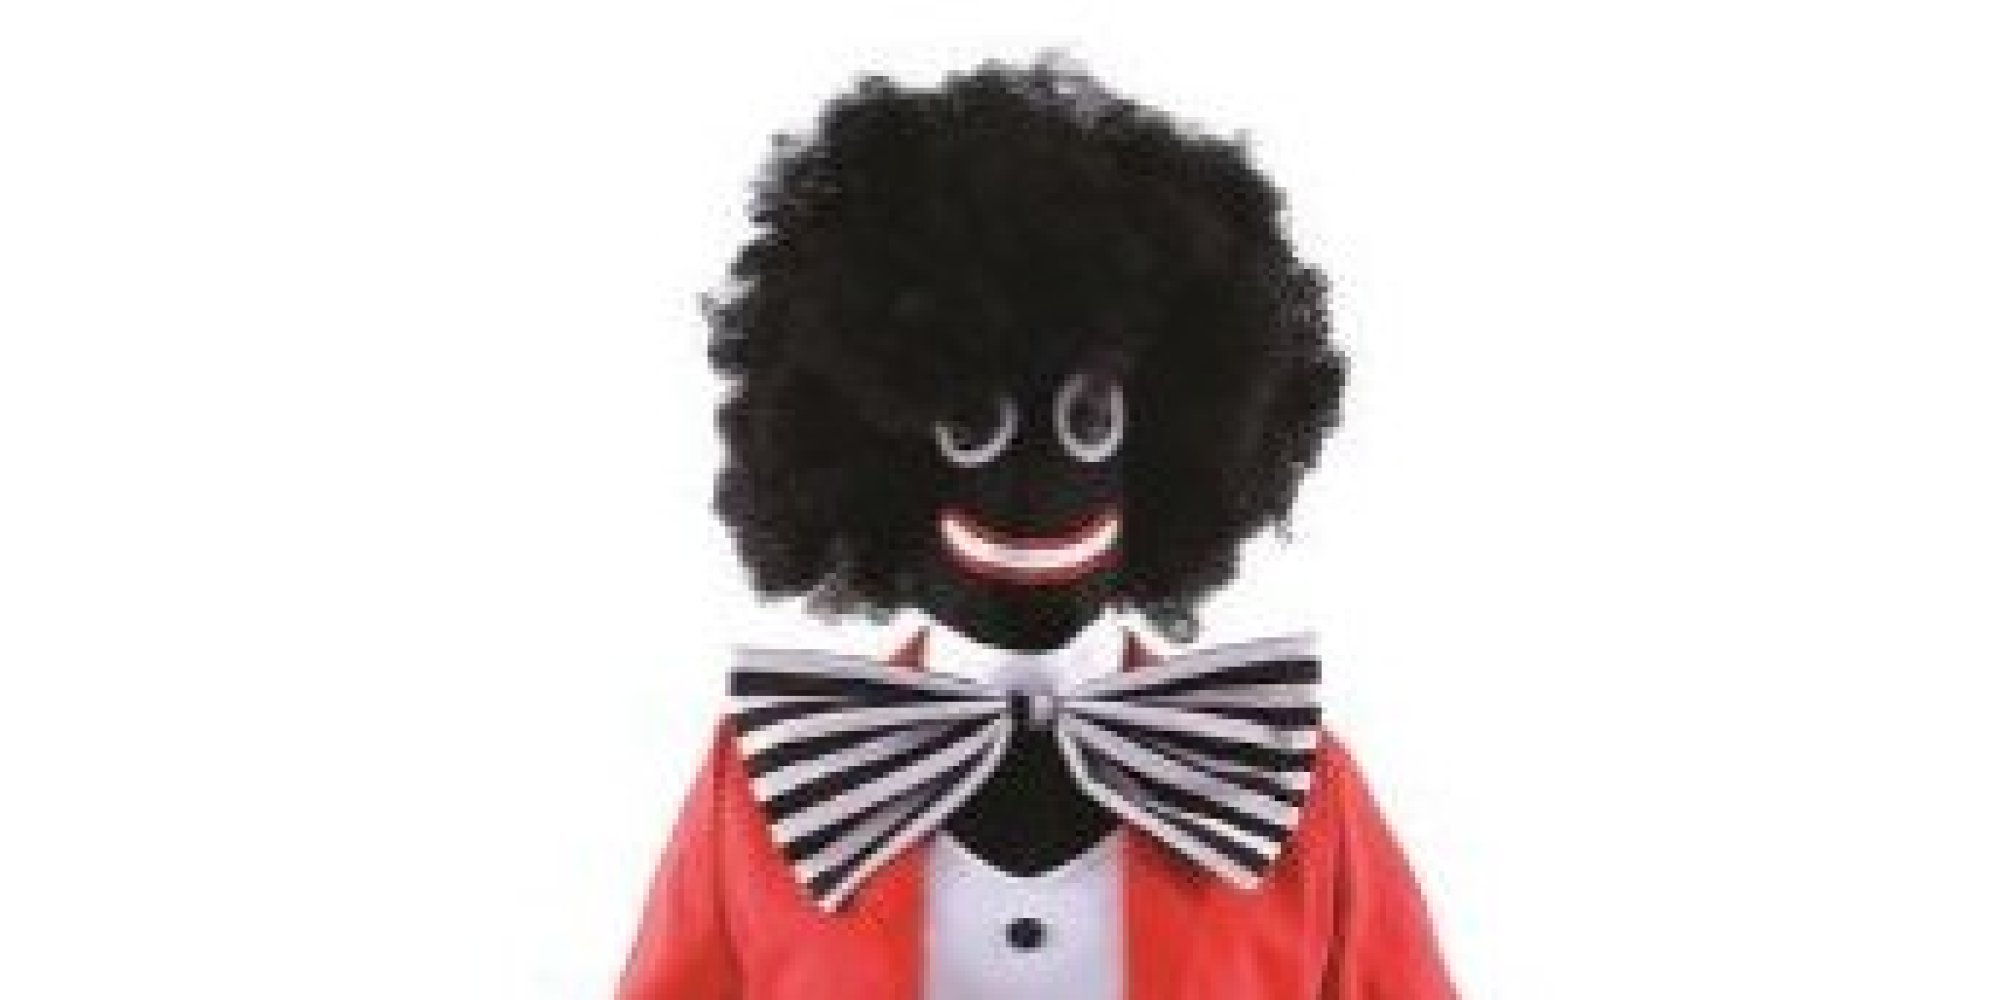 Amazon Sells Eye Catching Golly Doll Halloween Costume Huffpost Uk